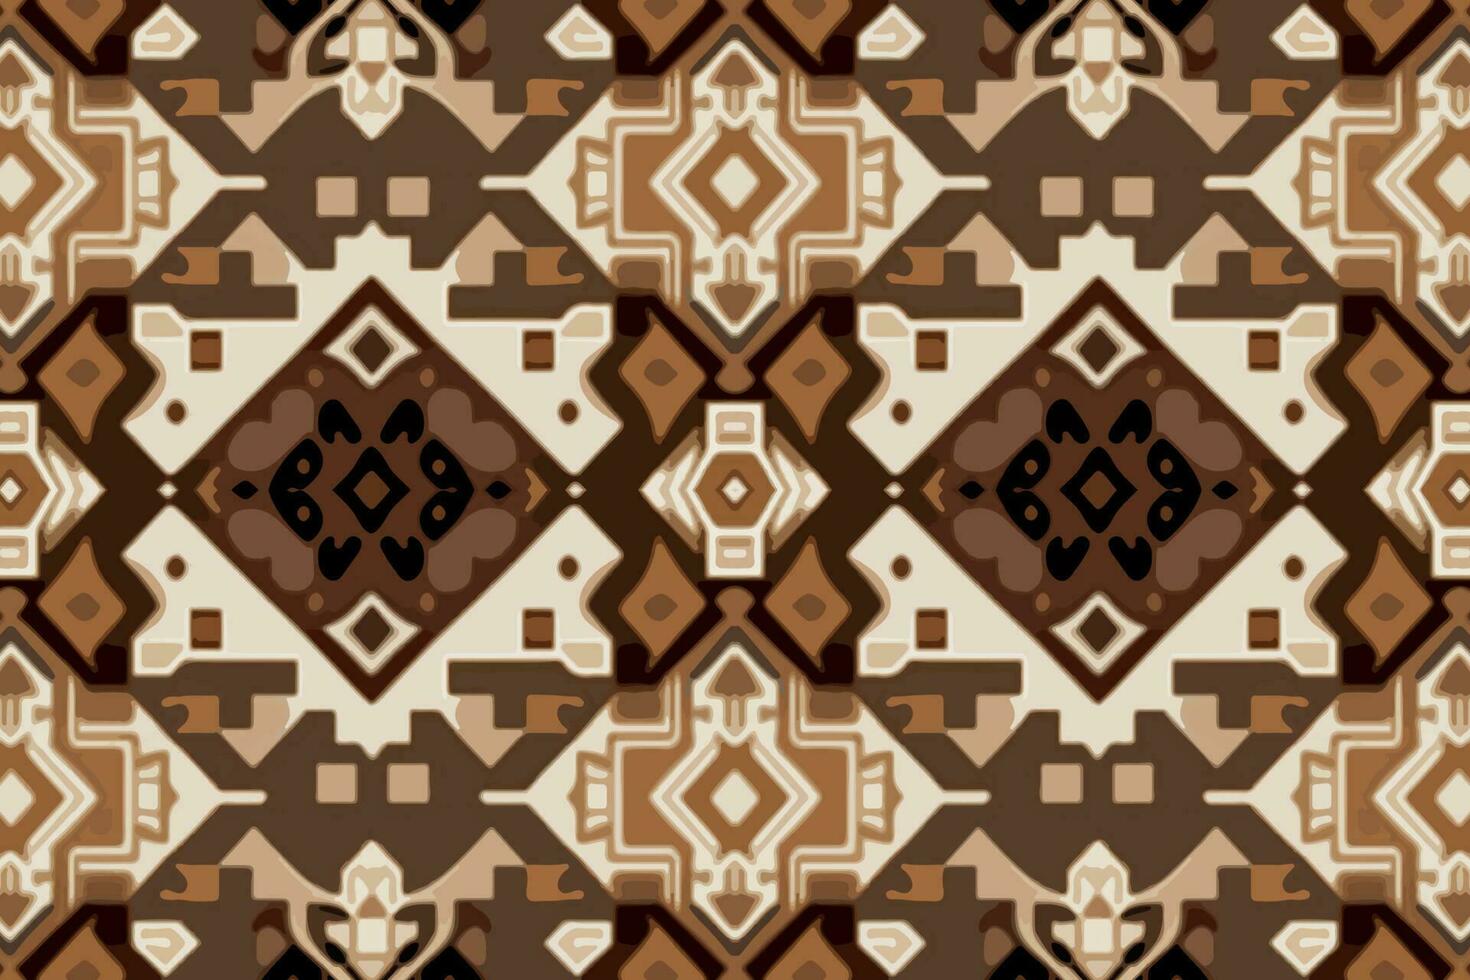 tyg textil- ikat geometrisk folklore prydnad sömlös mönster brun tona. abstrakt grafisk linje etnisk traditionell folk antik stam- modern utsmyckad lyx elegant minimal årgång retro stil. vektor